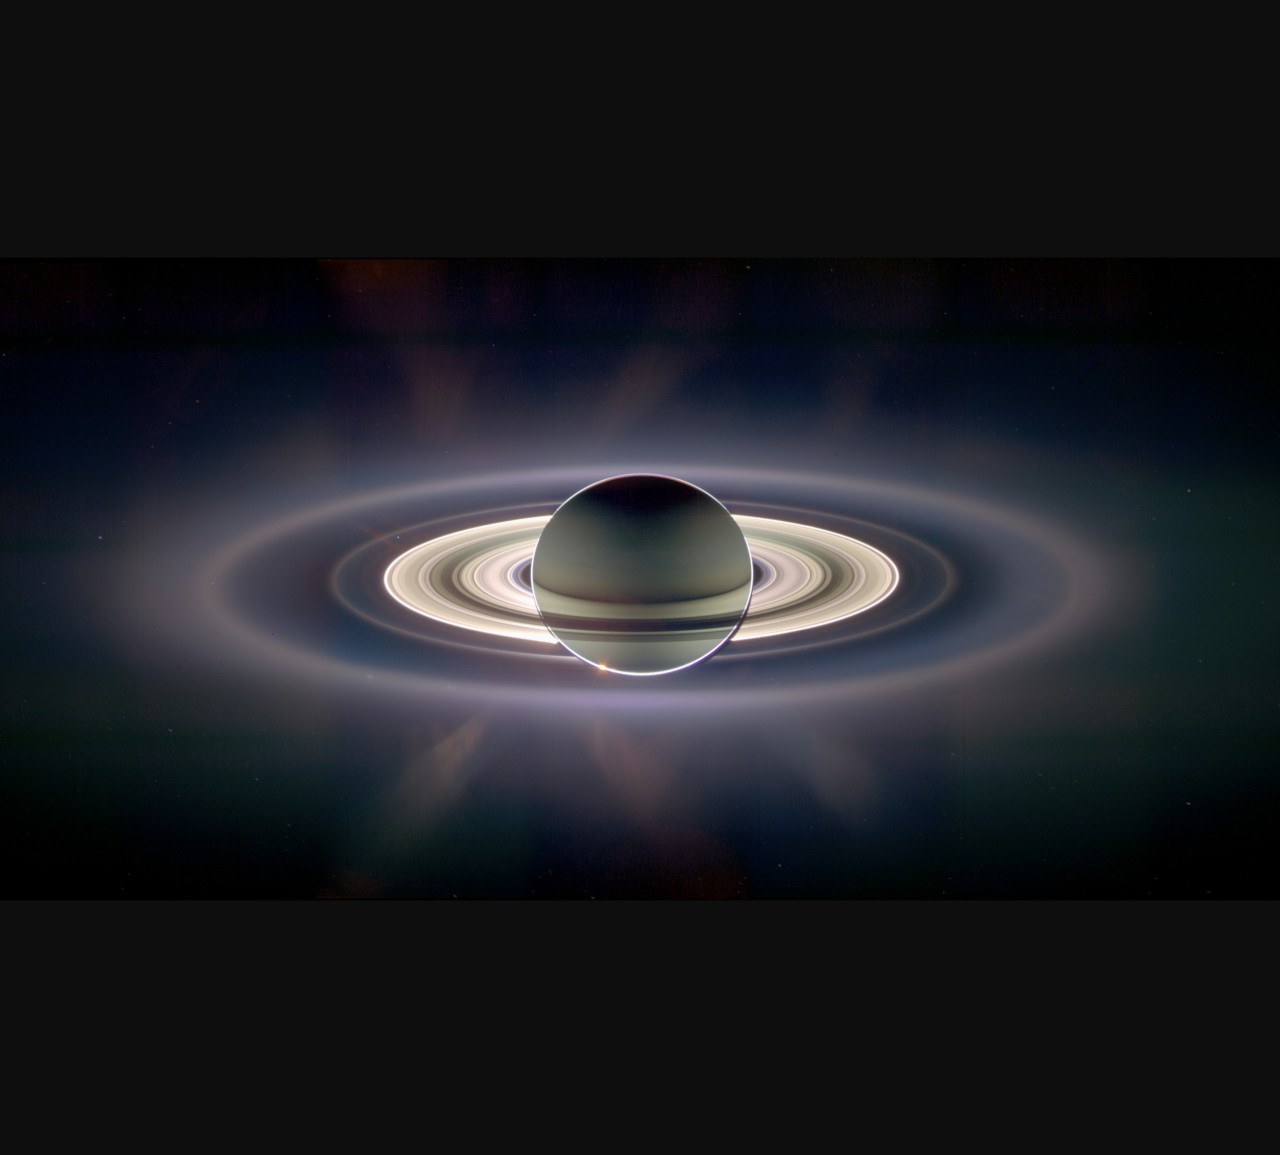 NASA pic of Saturn